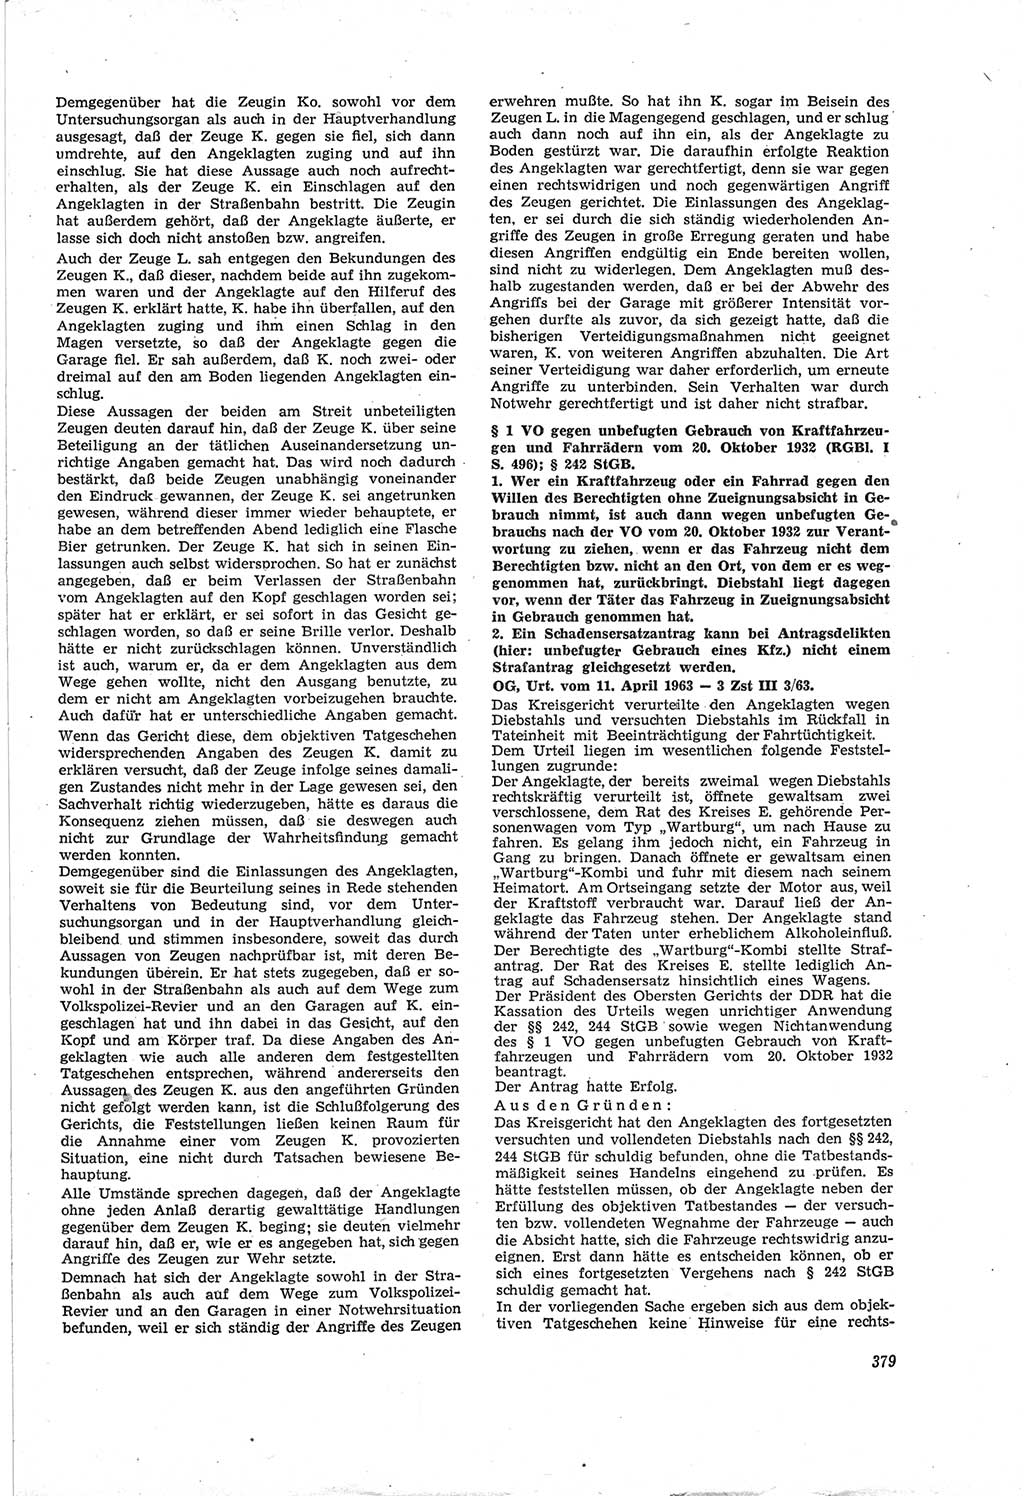 Neue Justiz (NJ), Zeitschrift für Recht und Rechtswissenschaft [Deutsche Demokratische Republik (DDR)], 18. Jahrgang 1964, Seite 379 (NJ DDR 1964, S. 379)